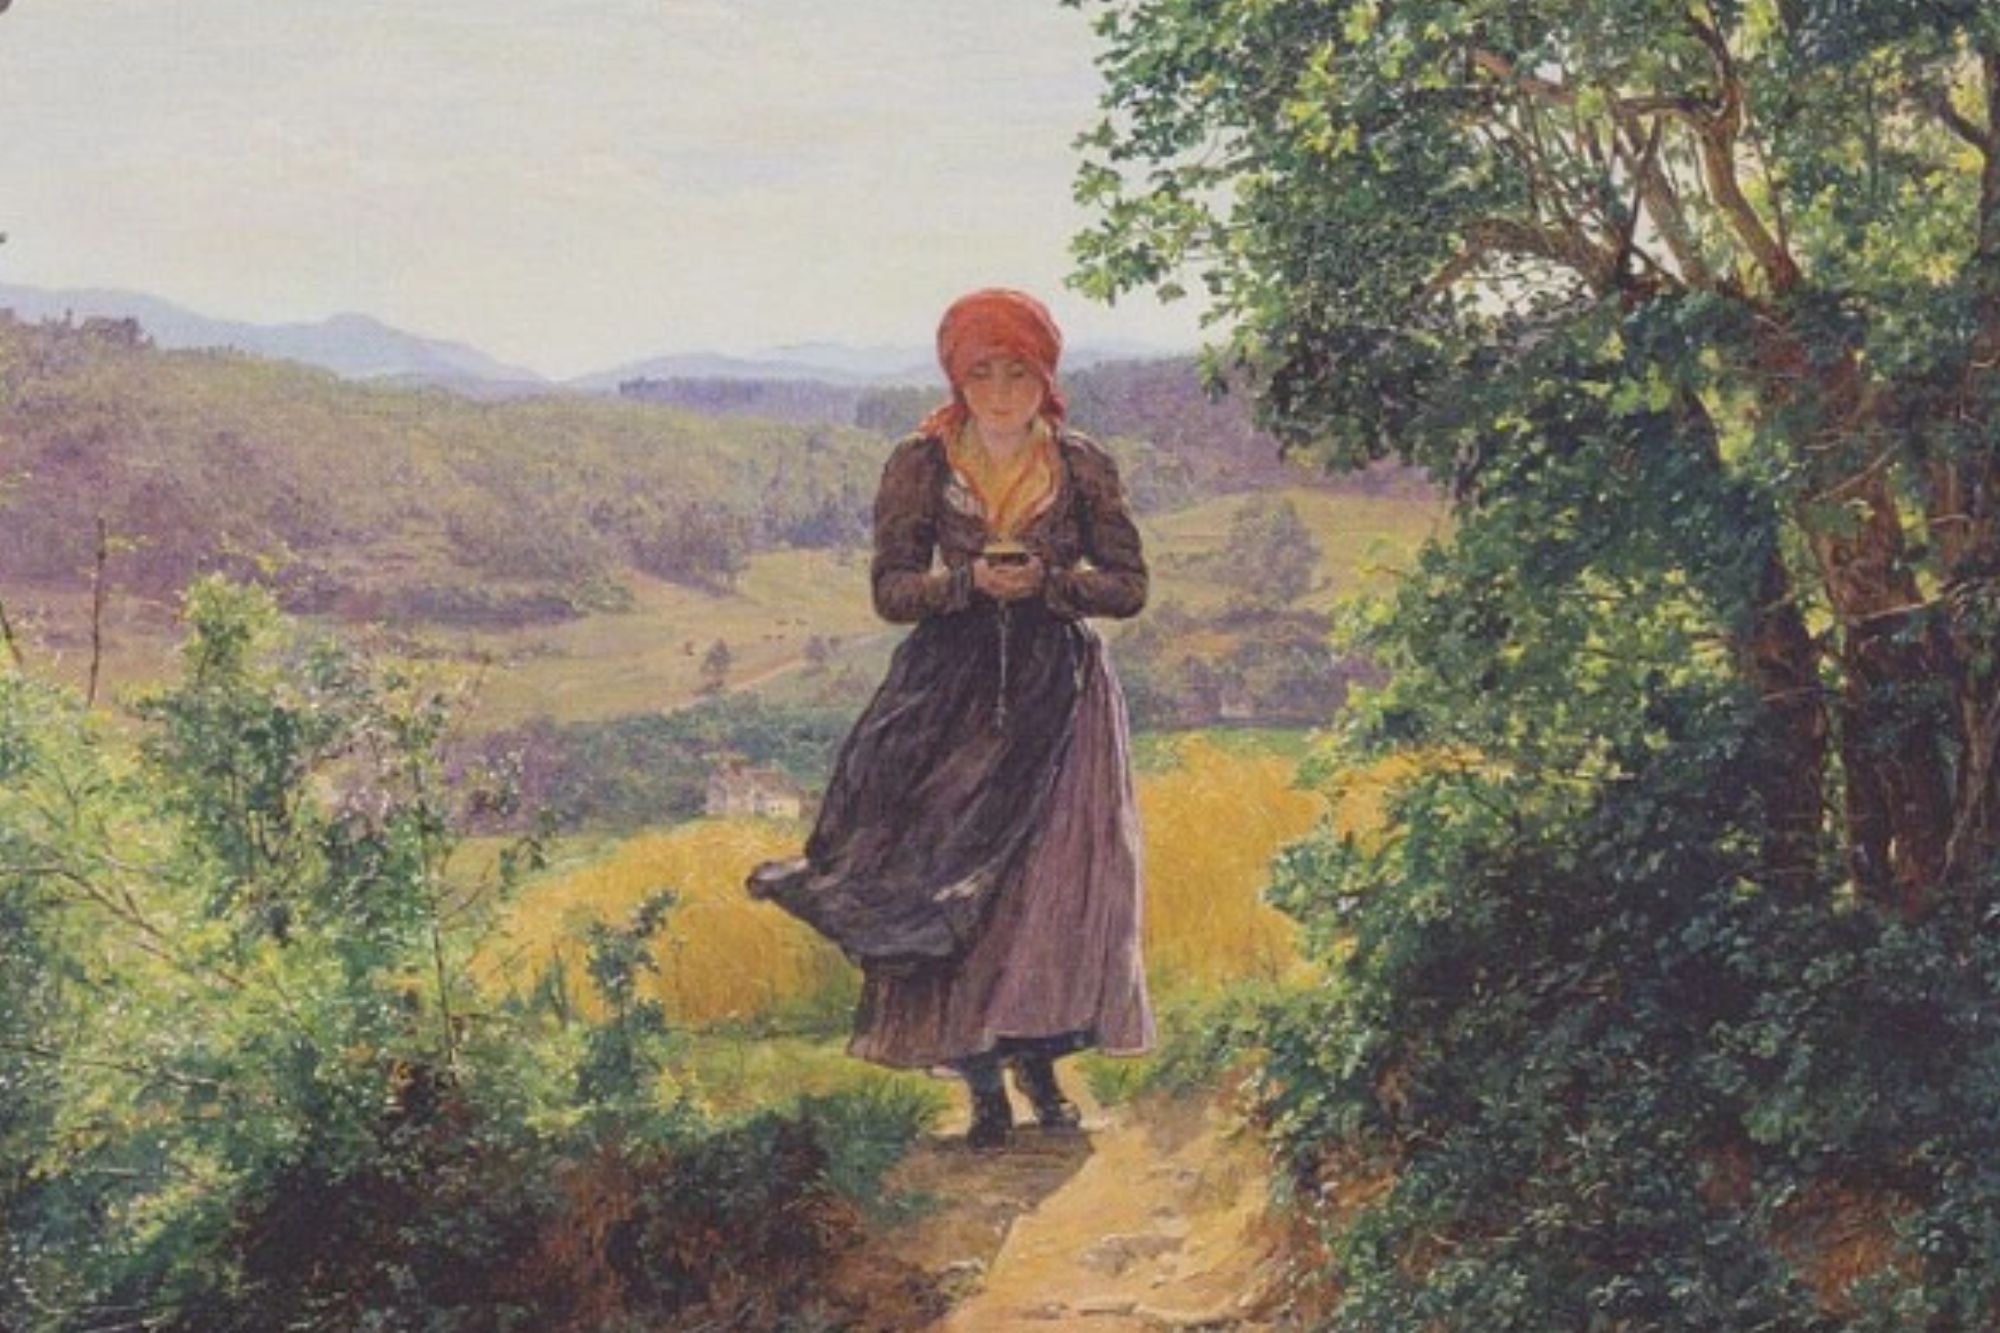 Întrebare pentru pasionații de pictură: De ce s-ar plimba o femeie de secol XIX cu un smartphone în mână? FOTO/VIDEO